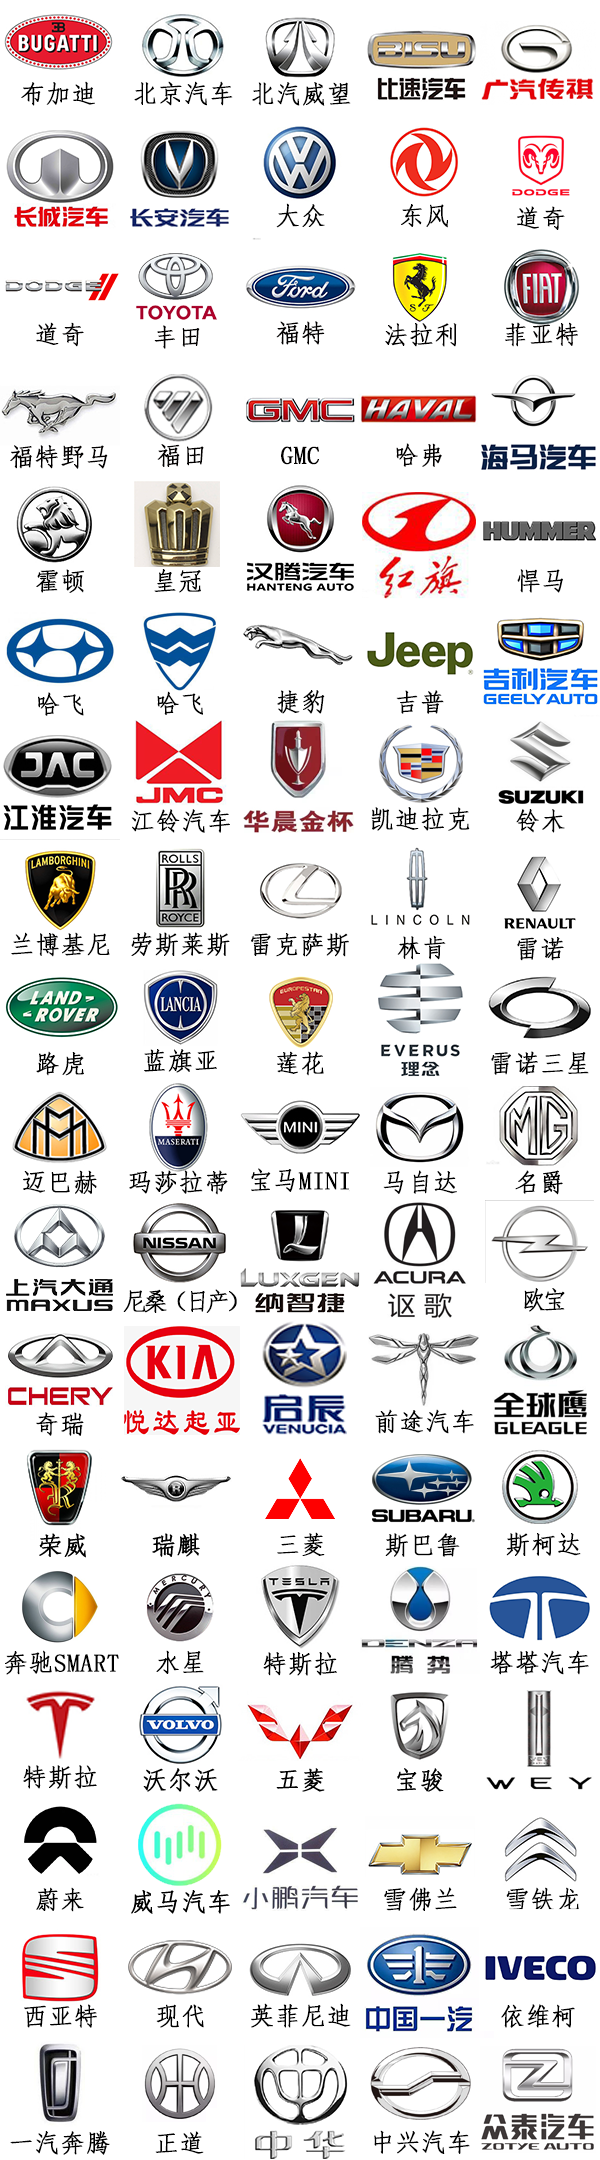 车标志识别图片大全图片2022各种汽车品牌标志大全